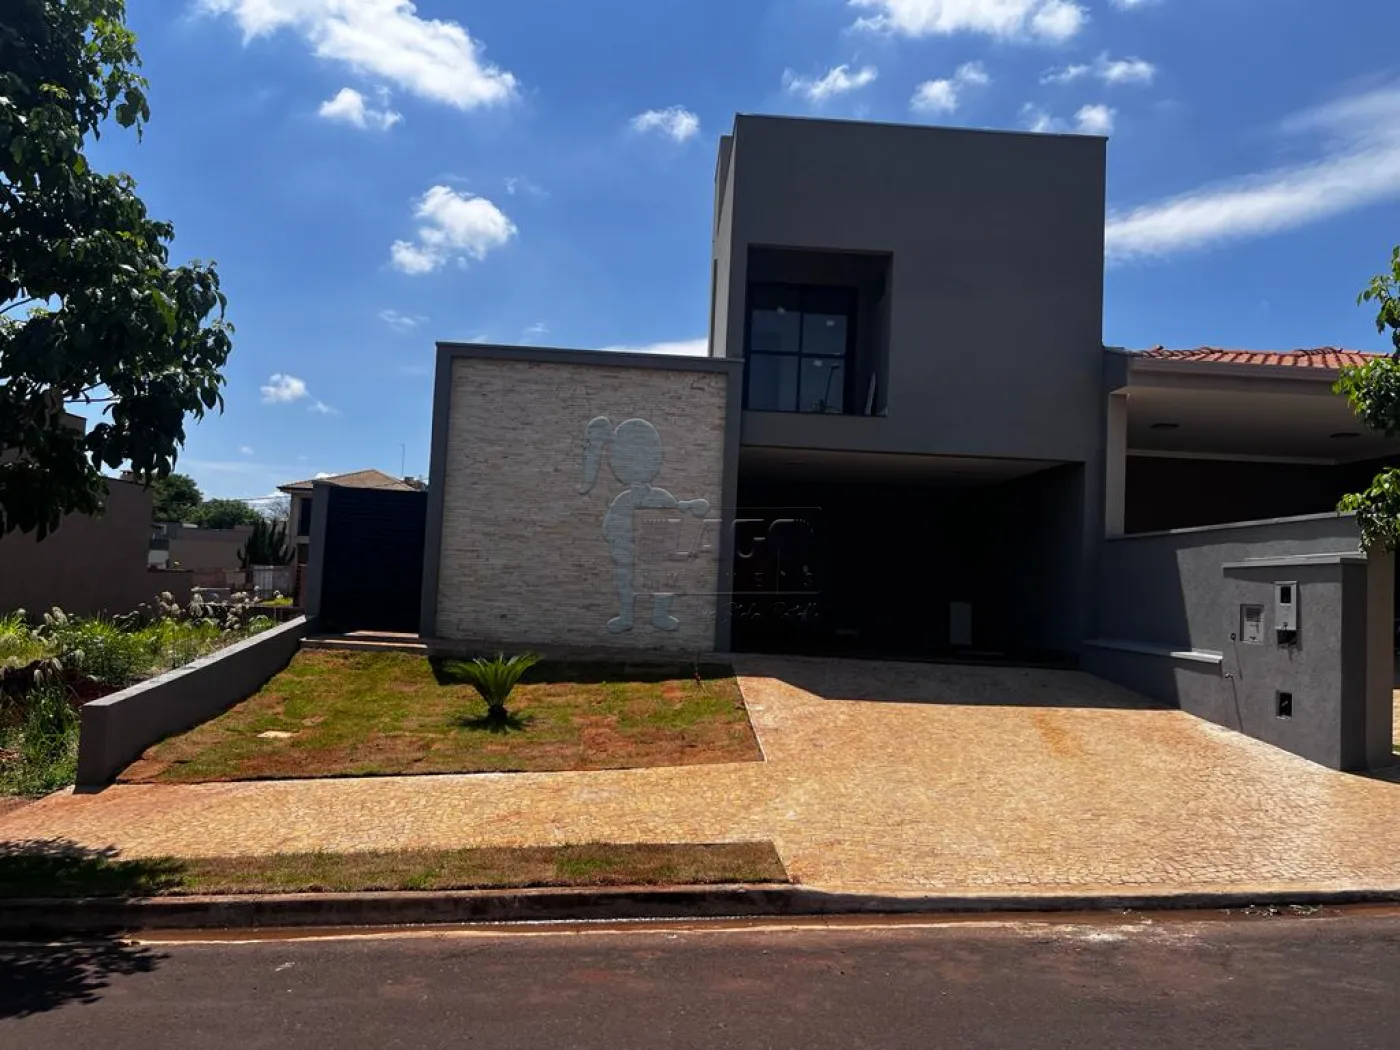 Comprar Casas / Condomínio em Bonfim Paulista R$ 970.000,00 - Foto 1